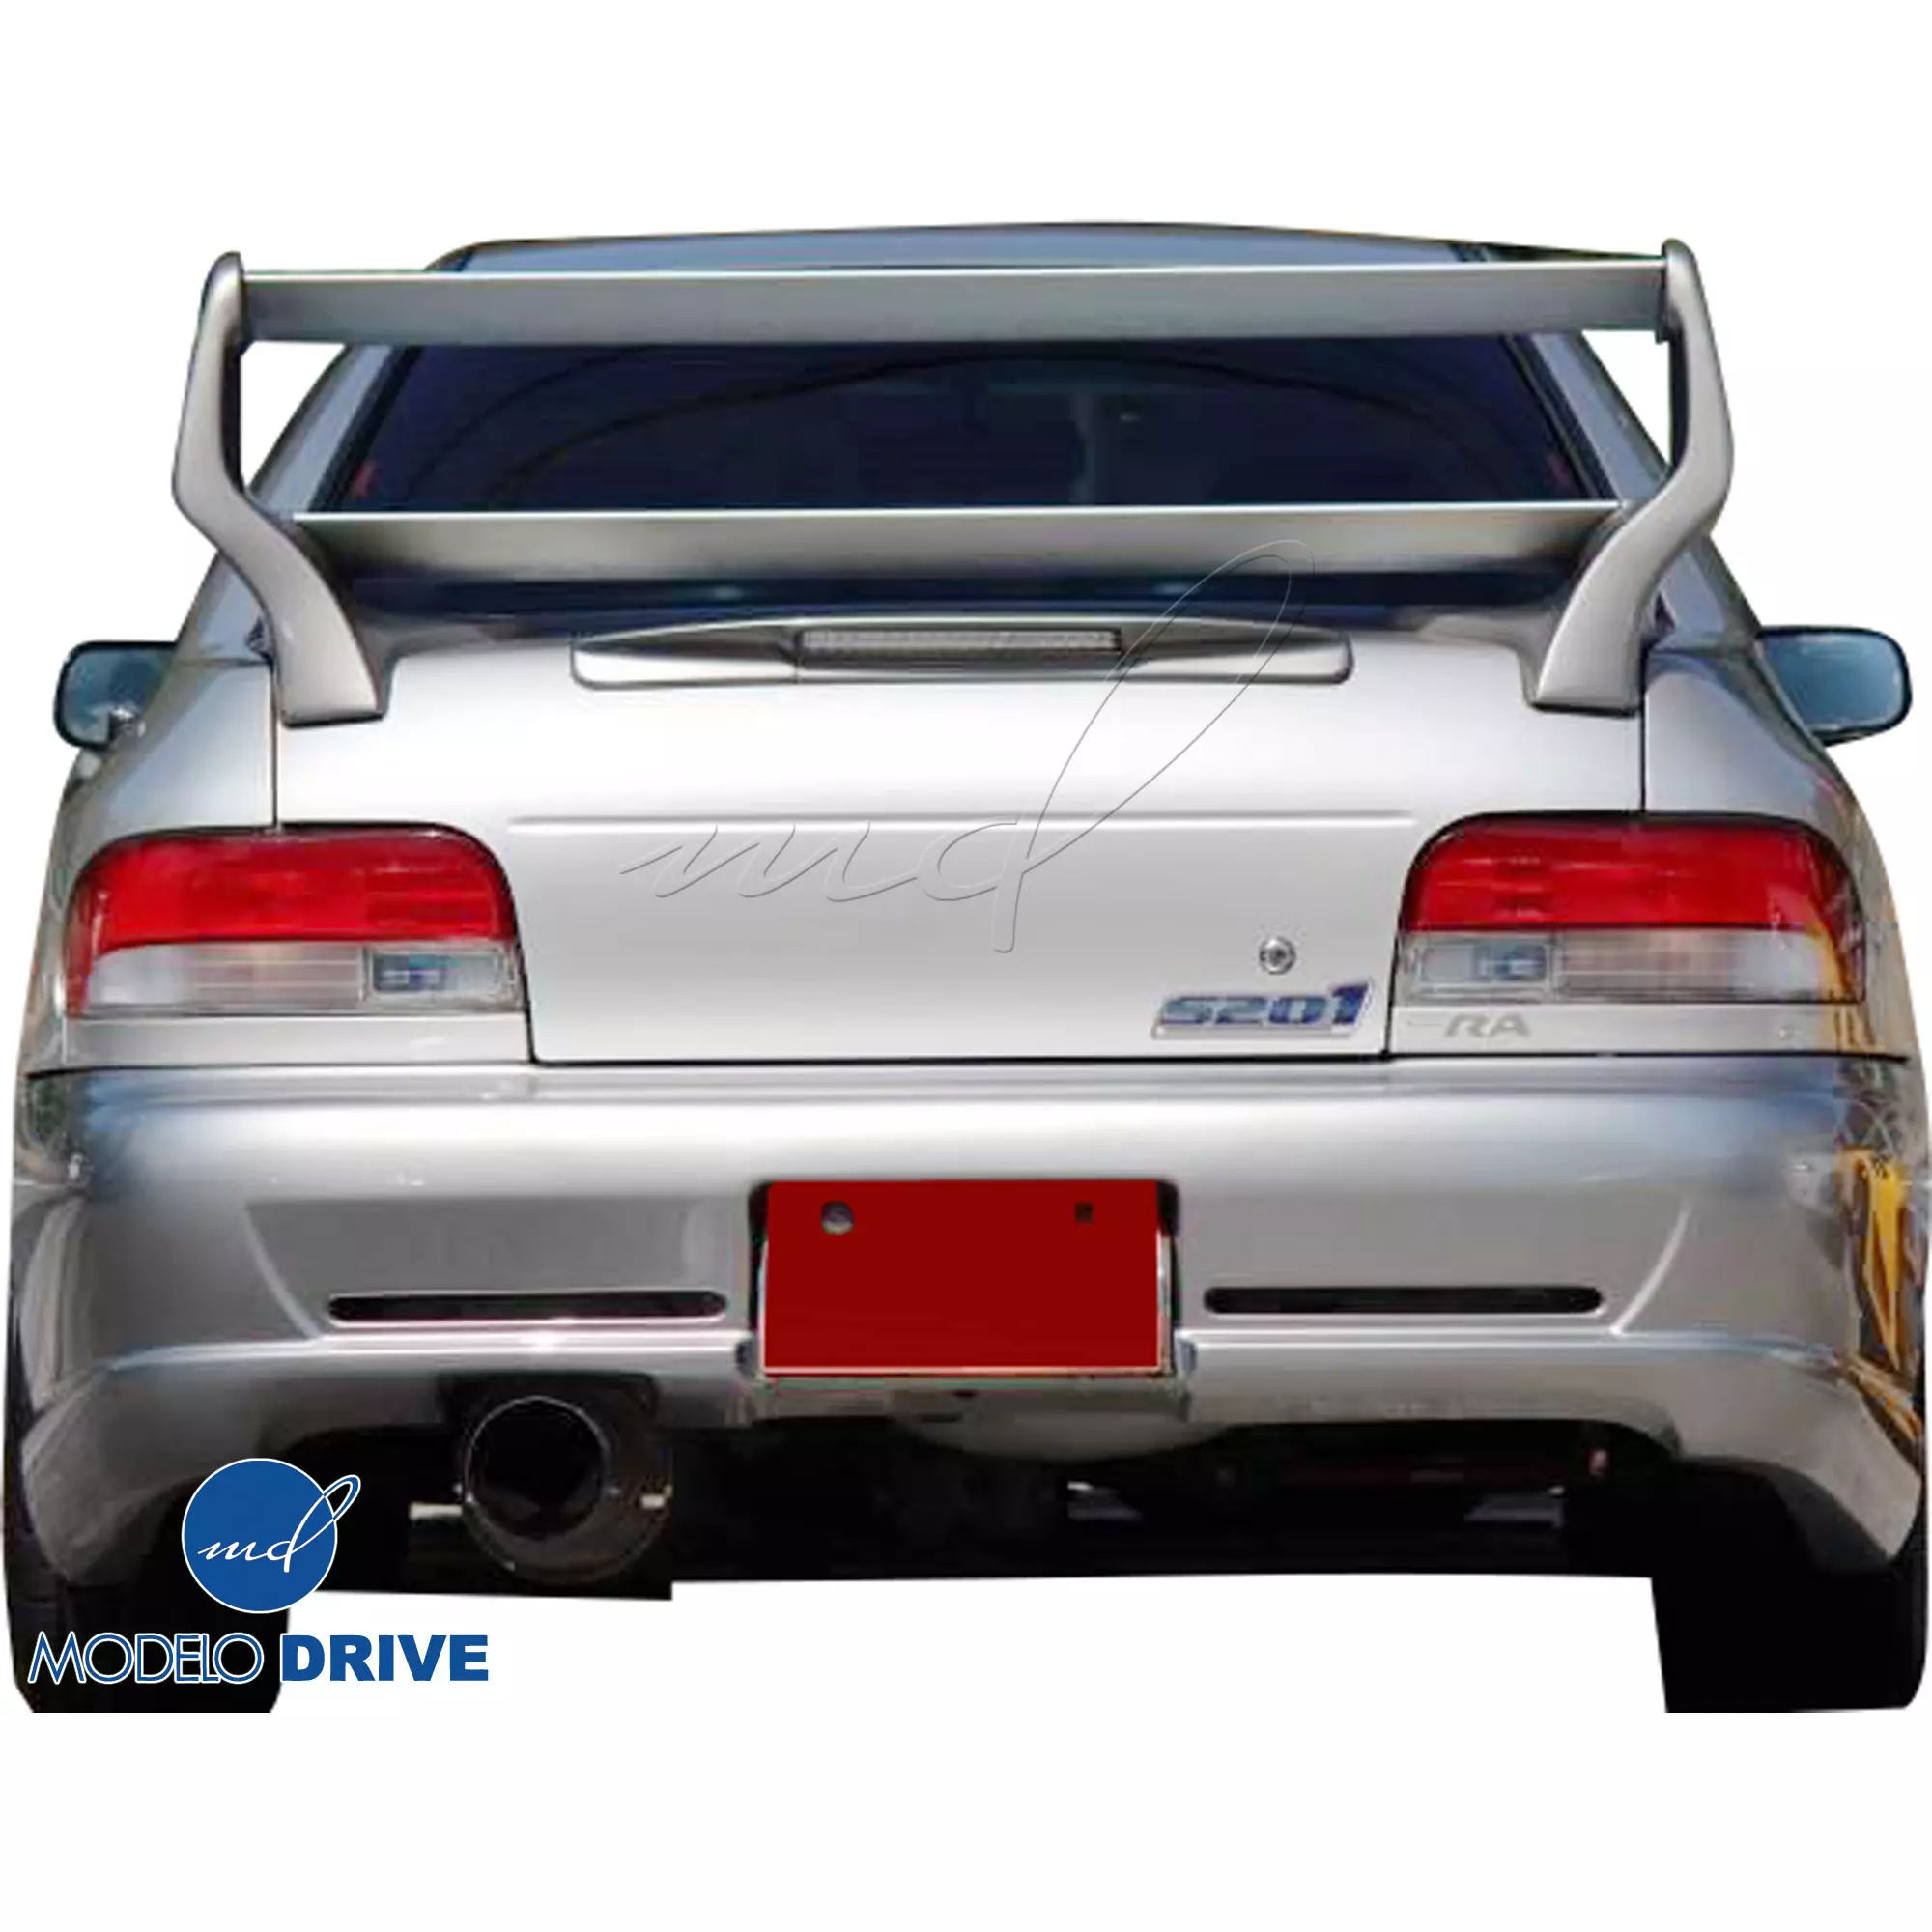 ModeloDrive FRP S201 Look Spoiler Wing > Subaru Impreza (GC8) 1993-2001 > 2/4dr - Image 9